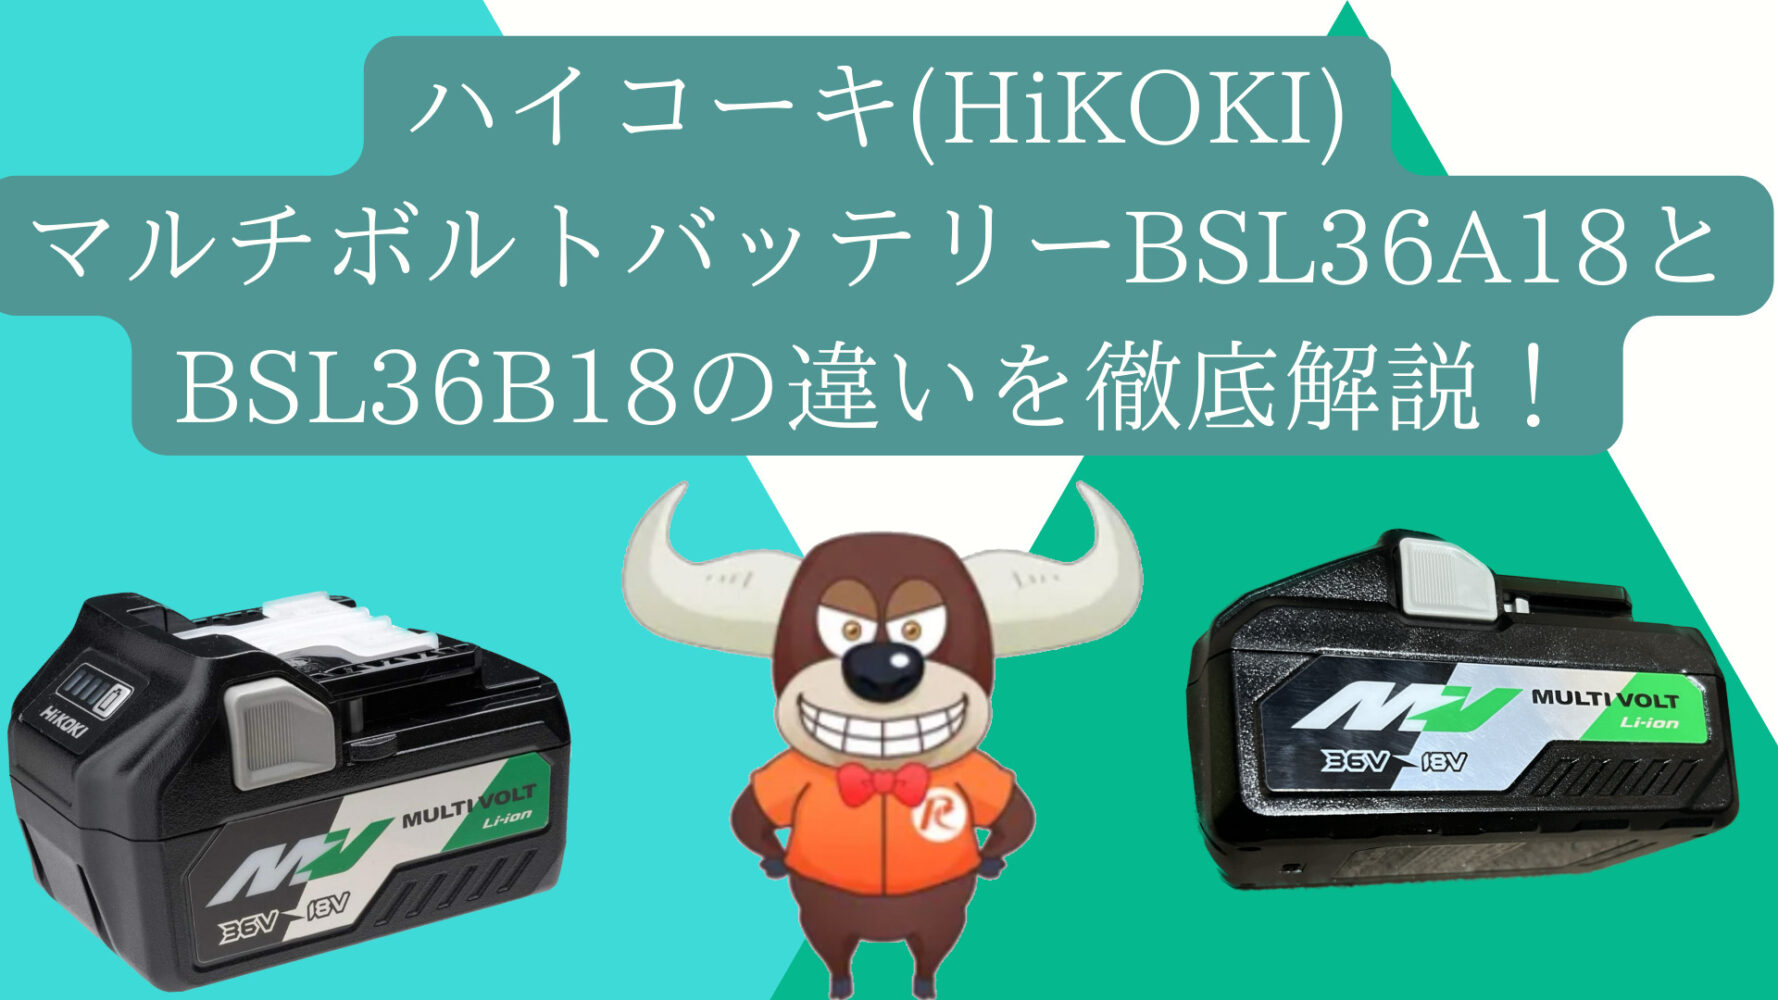 ハイコーキ(HiKOKI)、マルチボルトバッテリーBSL36A18とBSL36B18の違い